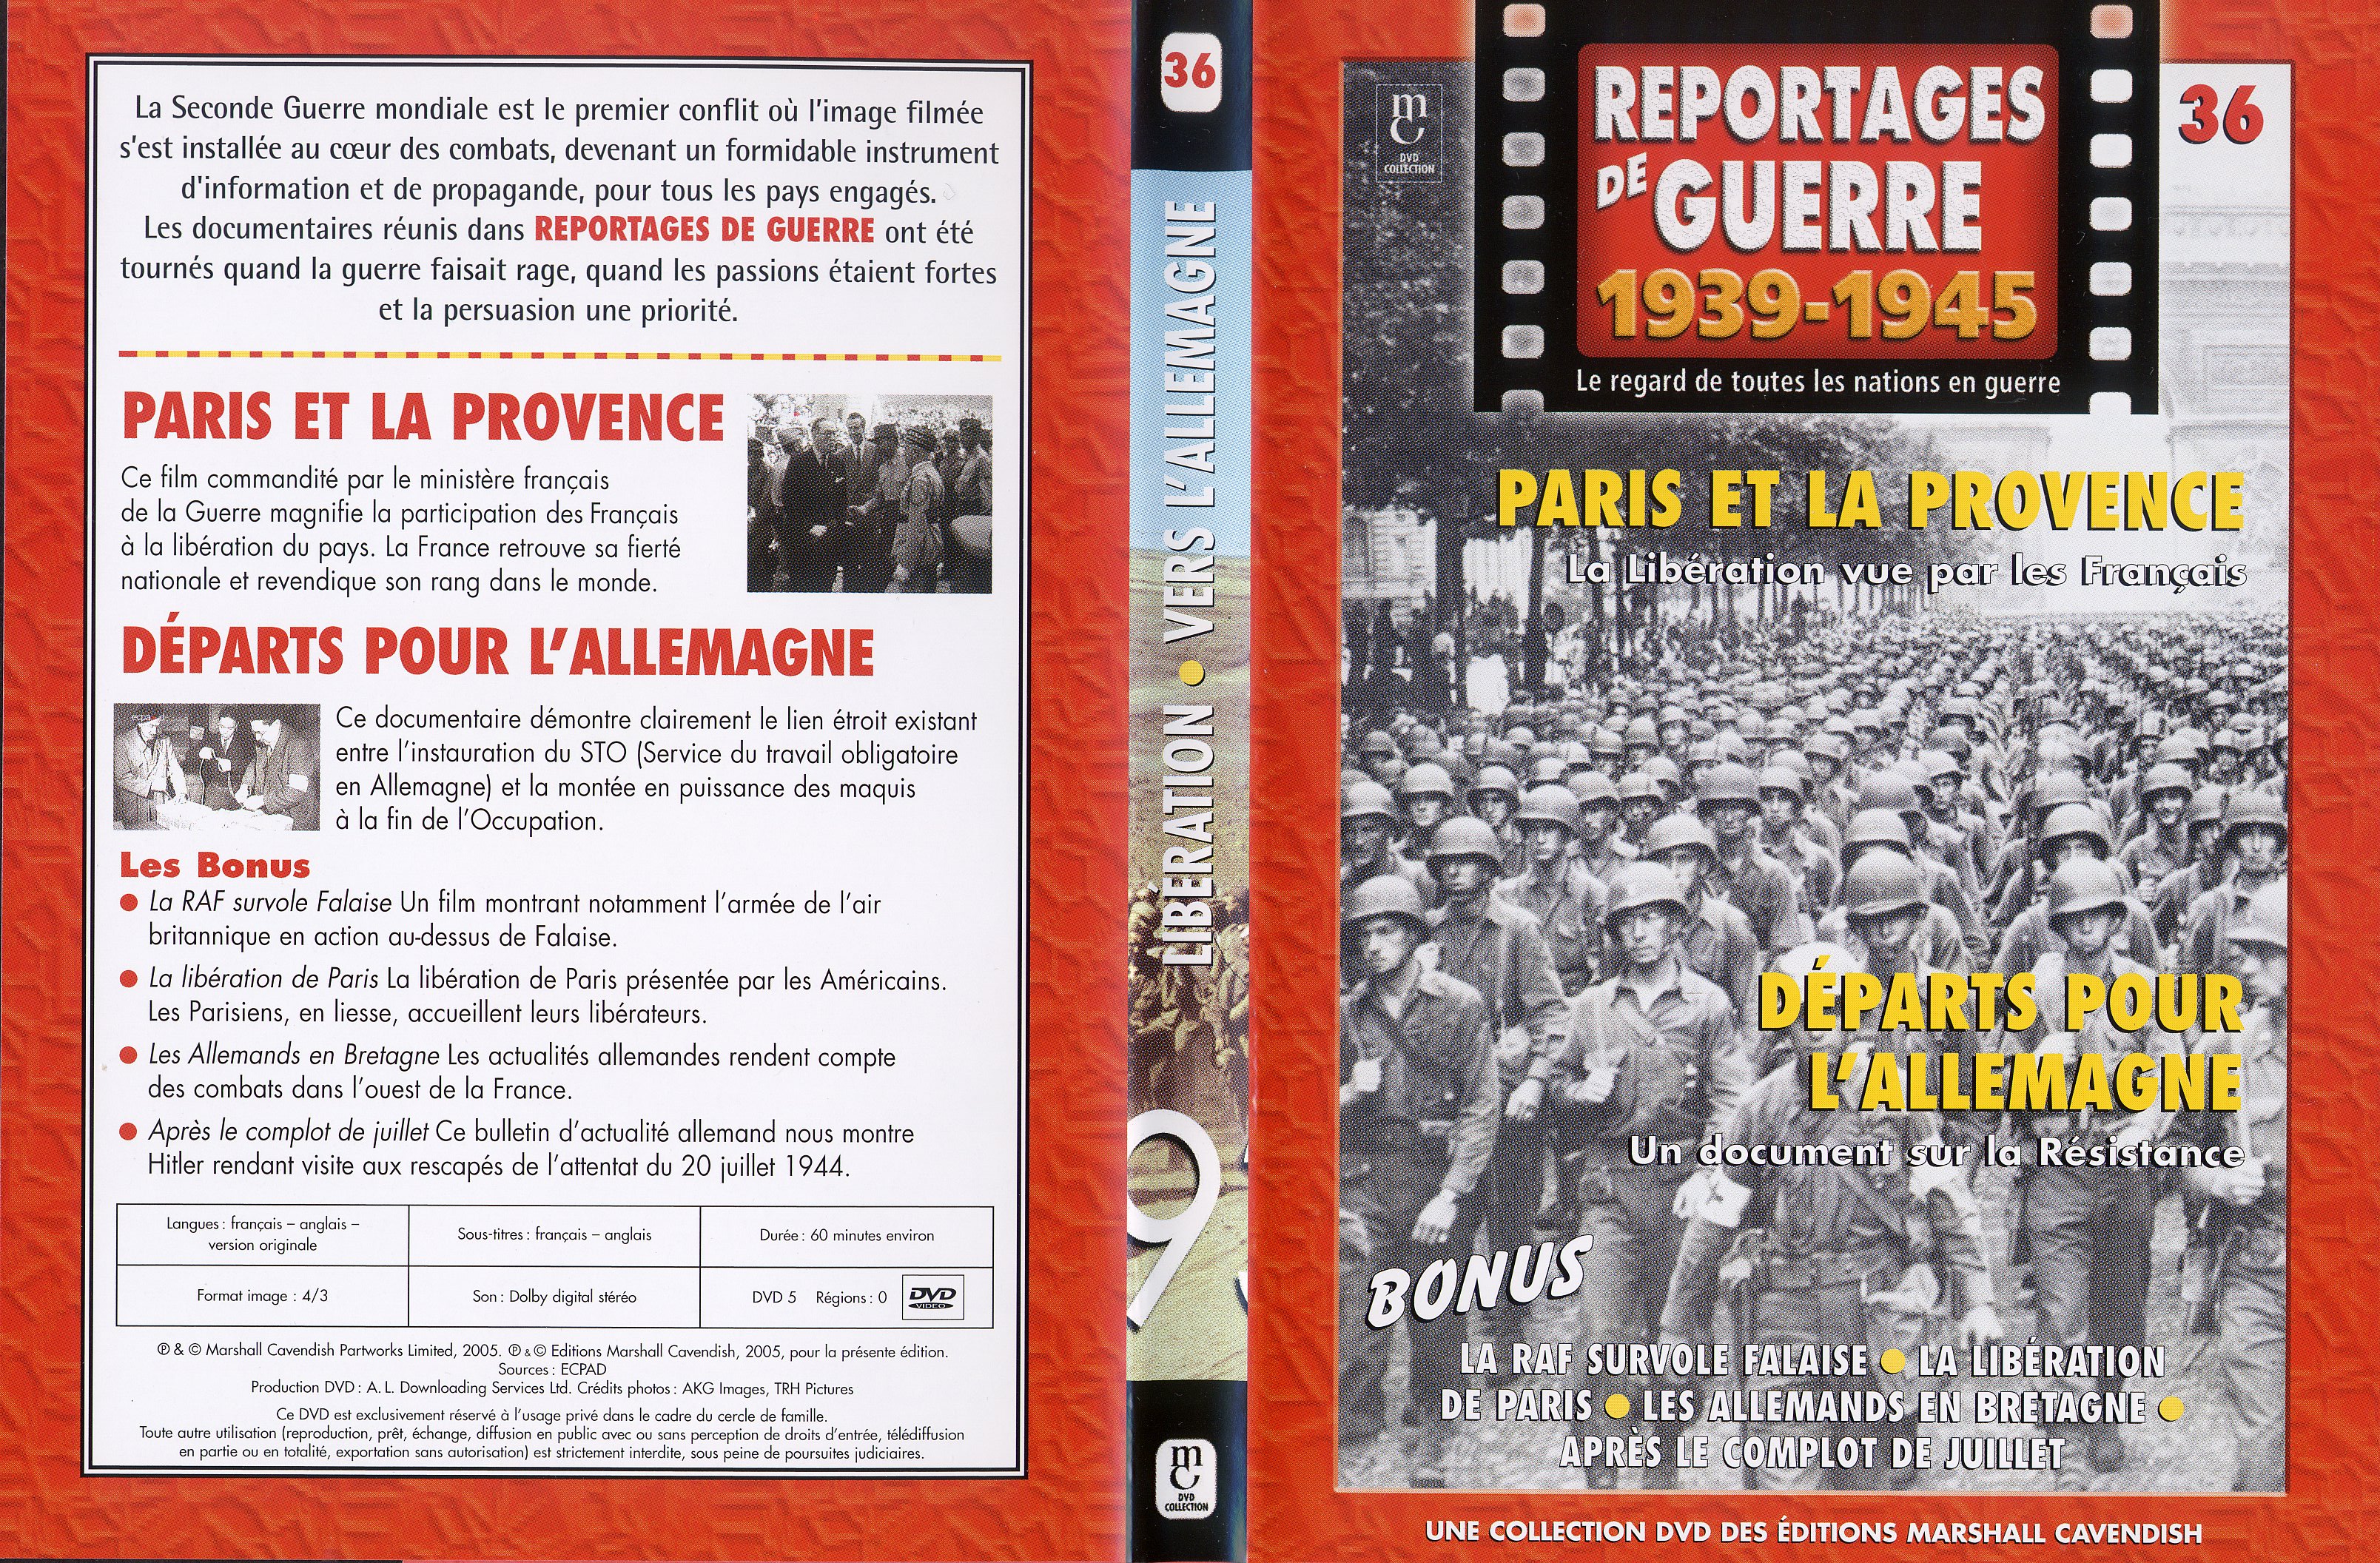 Jaquette DVD Reportages de guerre vol 36